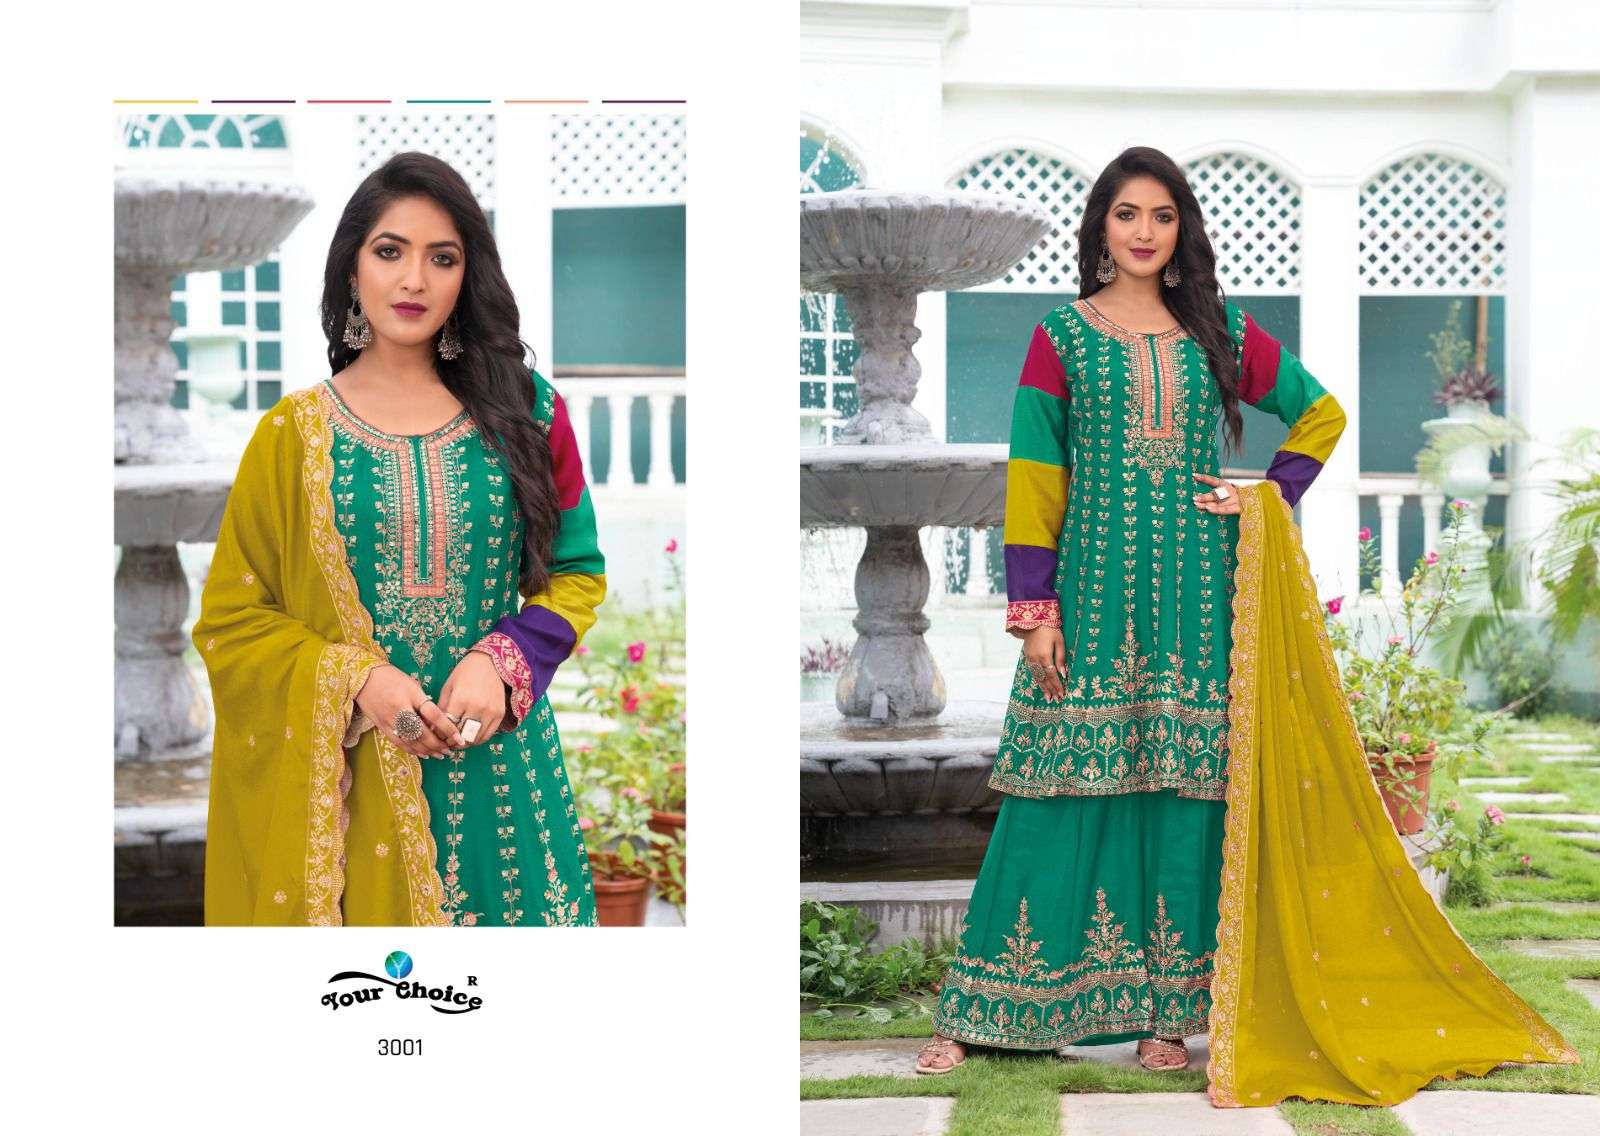 your choice taani 3001-3004 series latest pakistani readymade salwar kameez wholesaler surat gujarat